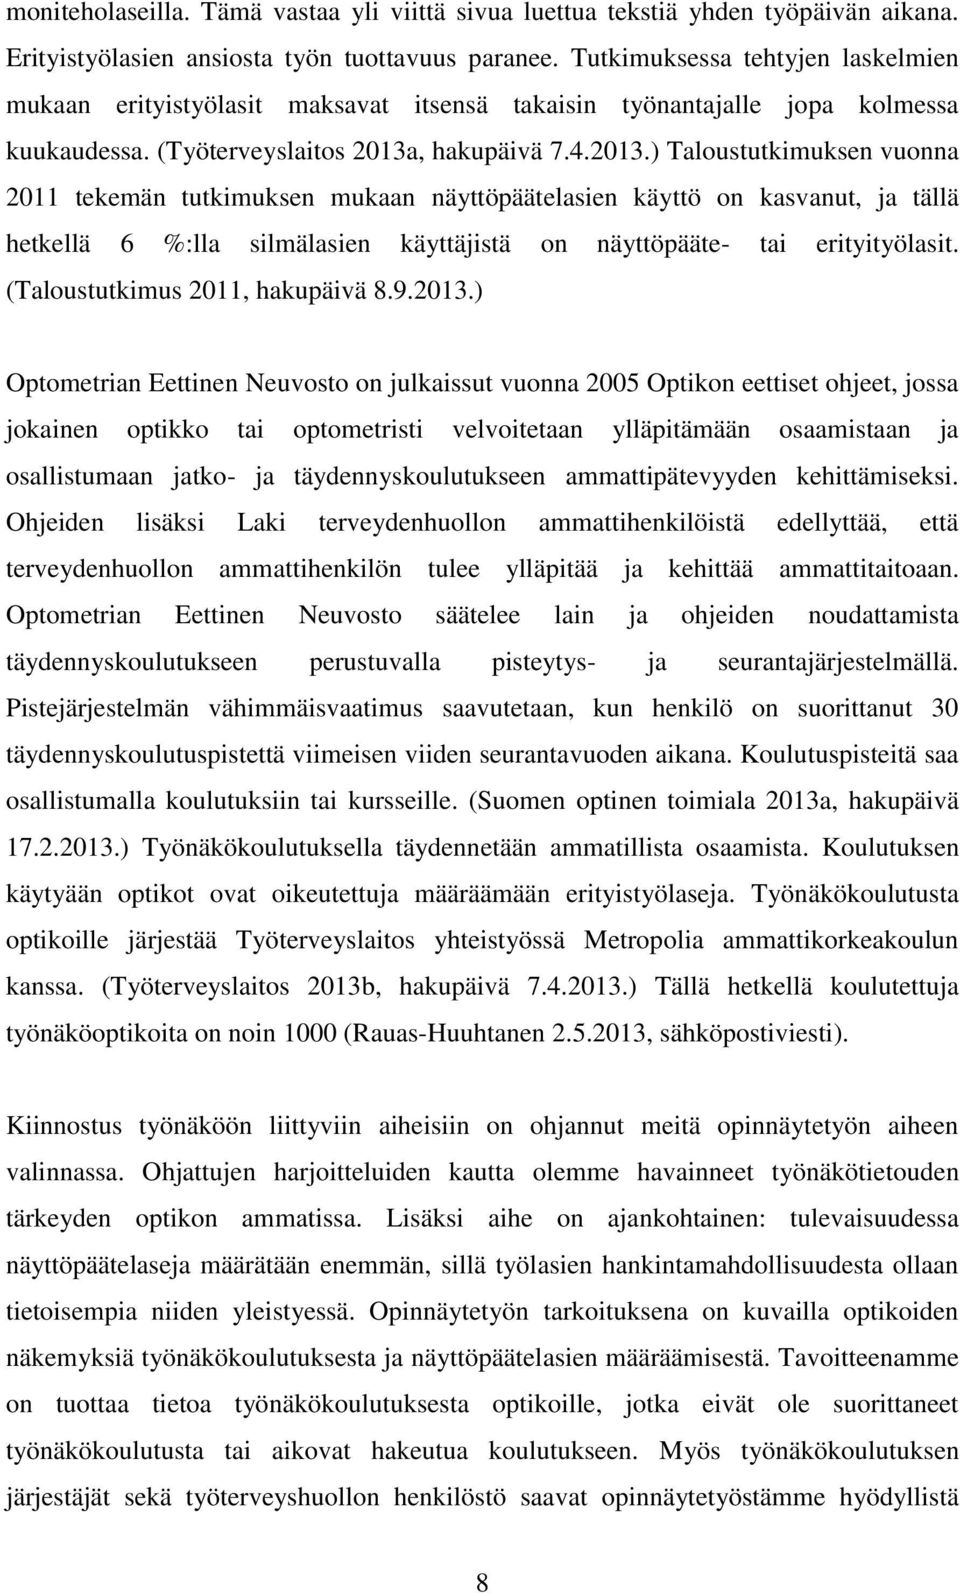 Anne Rihti & Heini Viljakainen OPTIKKO NÄYTTÖPÄÄTELASIEN MÄÄRÄÄJÄNÄ - PDF  Free Download